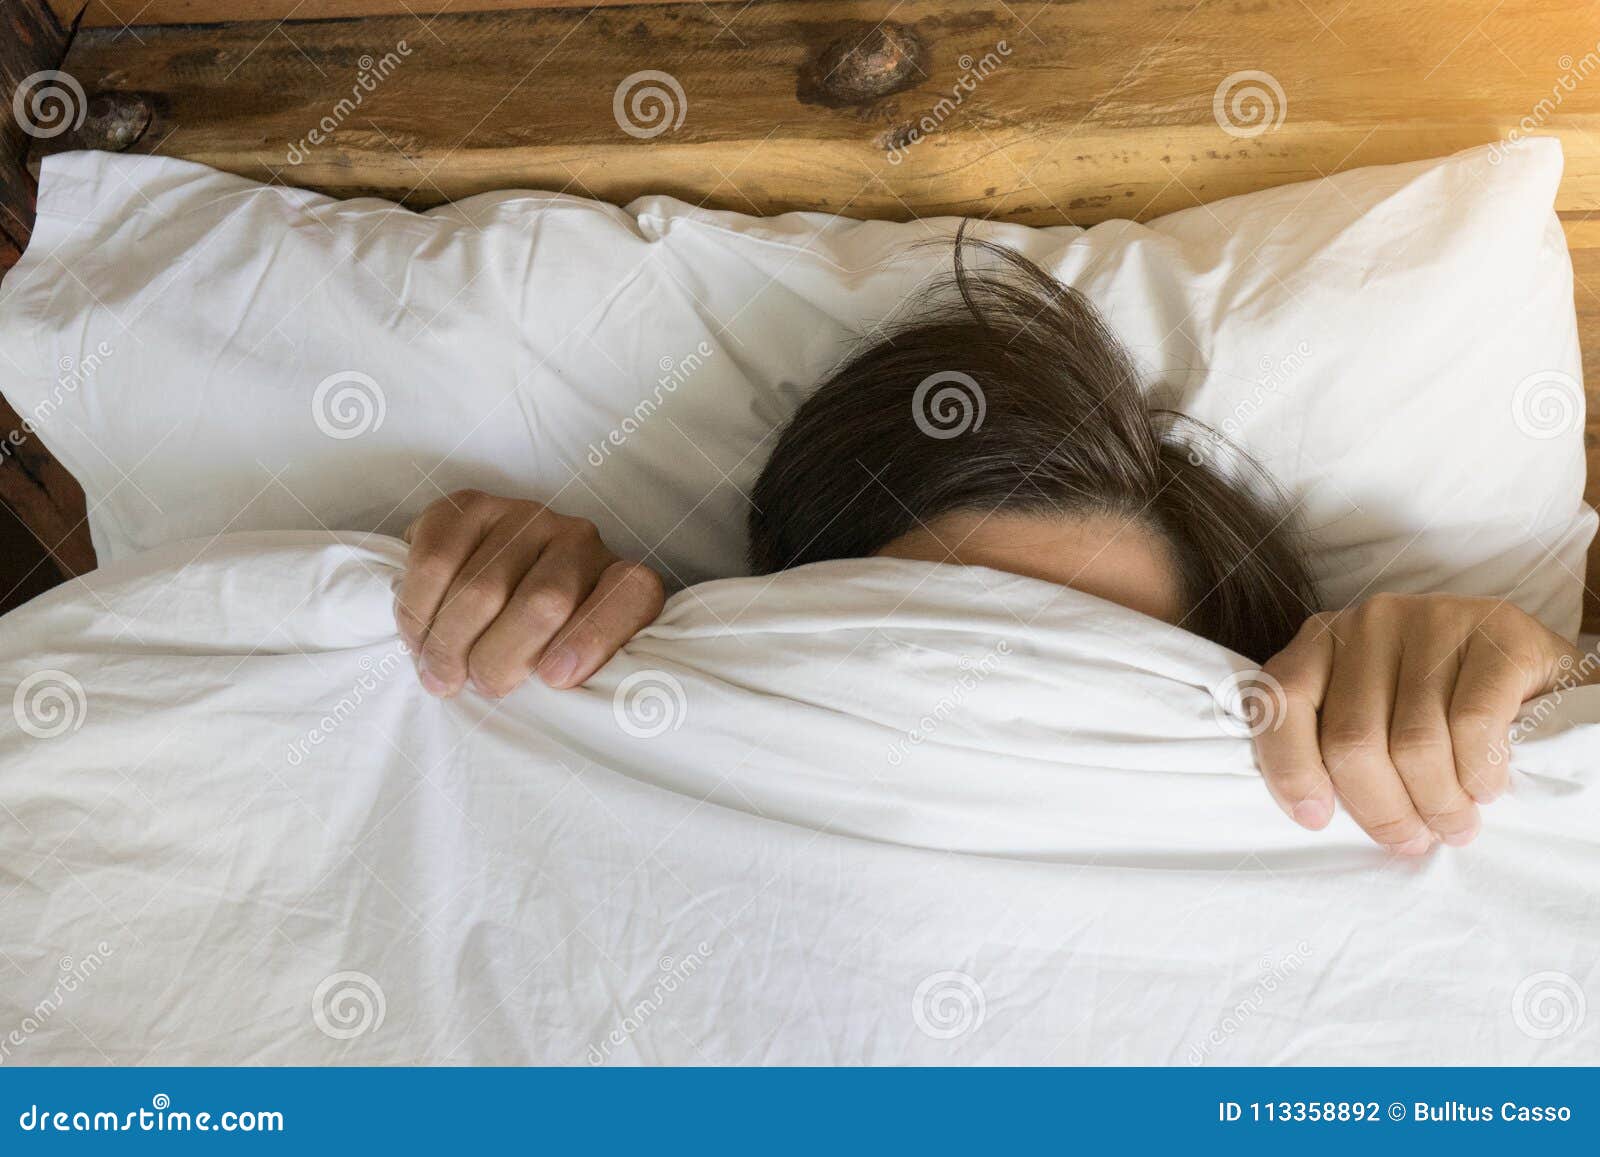 lengte soep Moeras Mens Het Verbergen in Bed Onder De Deken Thuis Stock Foto - Image of deken,  huid: 113358892